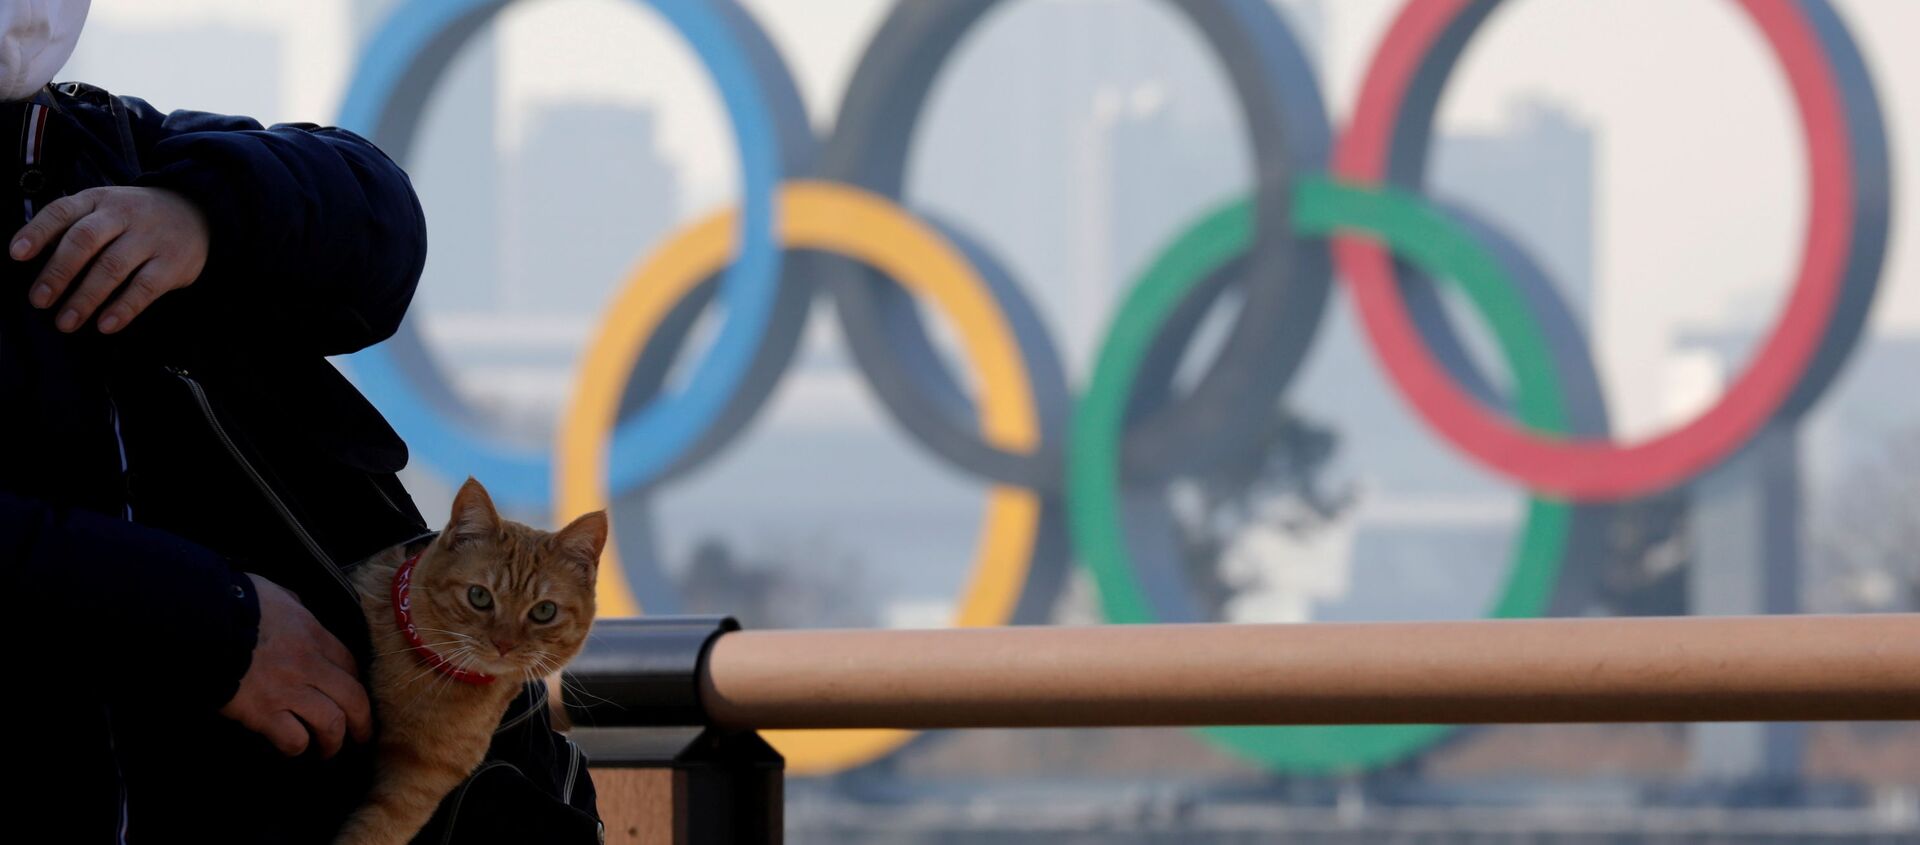 Мужчина с котом в сумке на фоне олимпийских колец в Токио - Sputnik Азербайджан, 1920, 30.01.2021